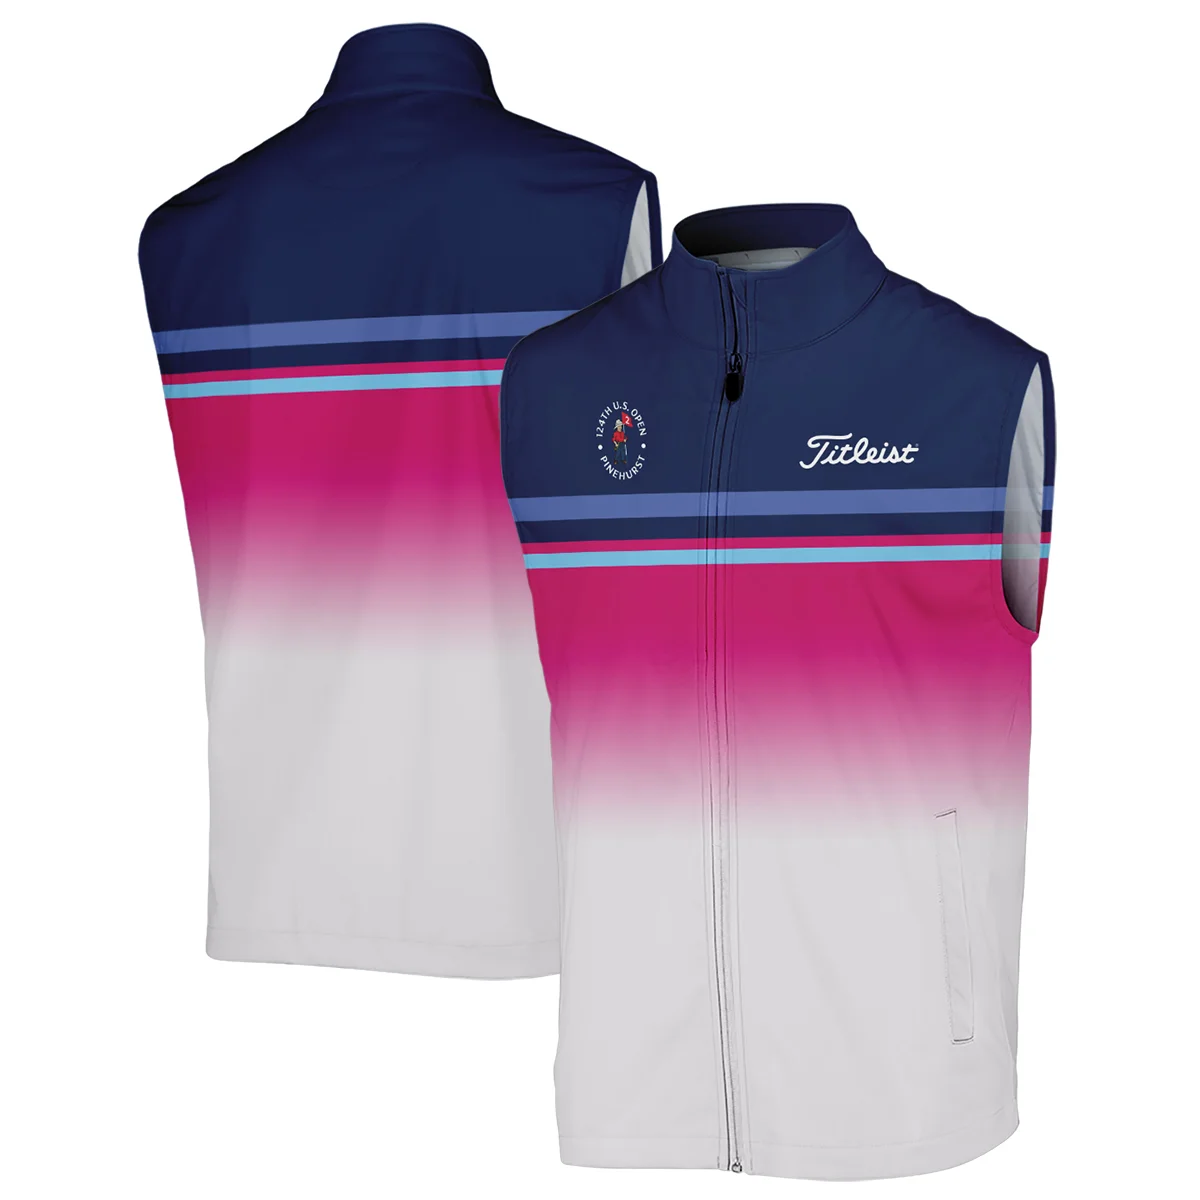 Sport Titleist 124th U.S. Open Pinehurst Zipper Hoodie Shirt White Strong Pink Very Dark Blue Pattern  All Over Print Zipper Hoodie Shirt